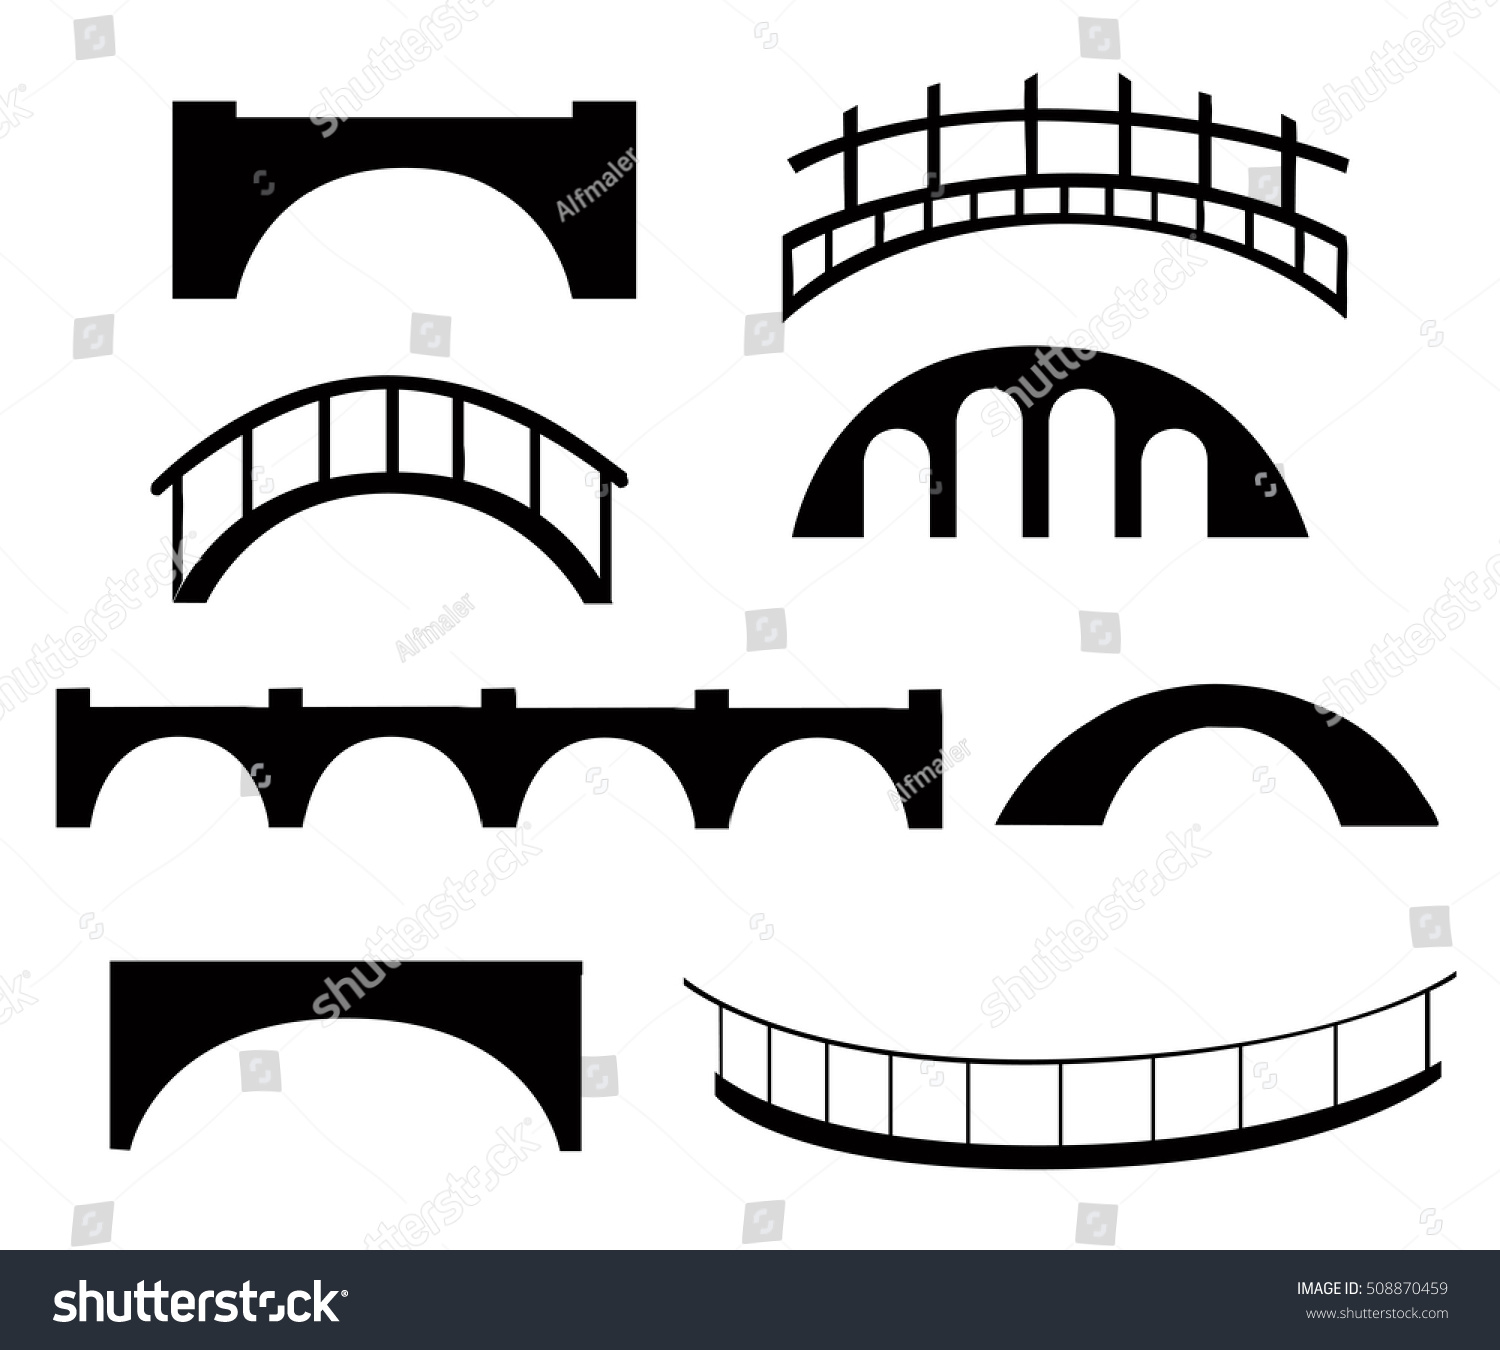 白いシルエットベクターイラストに異なる橋 ゲームの背景に石の木の橋 のベクター画像素材 ロイヤリティフリー